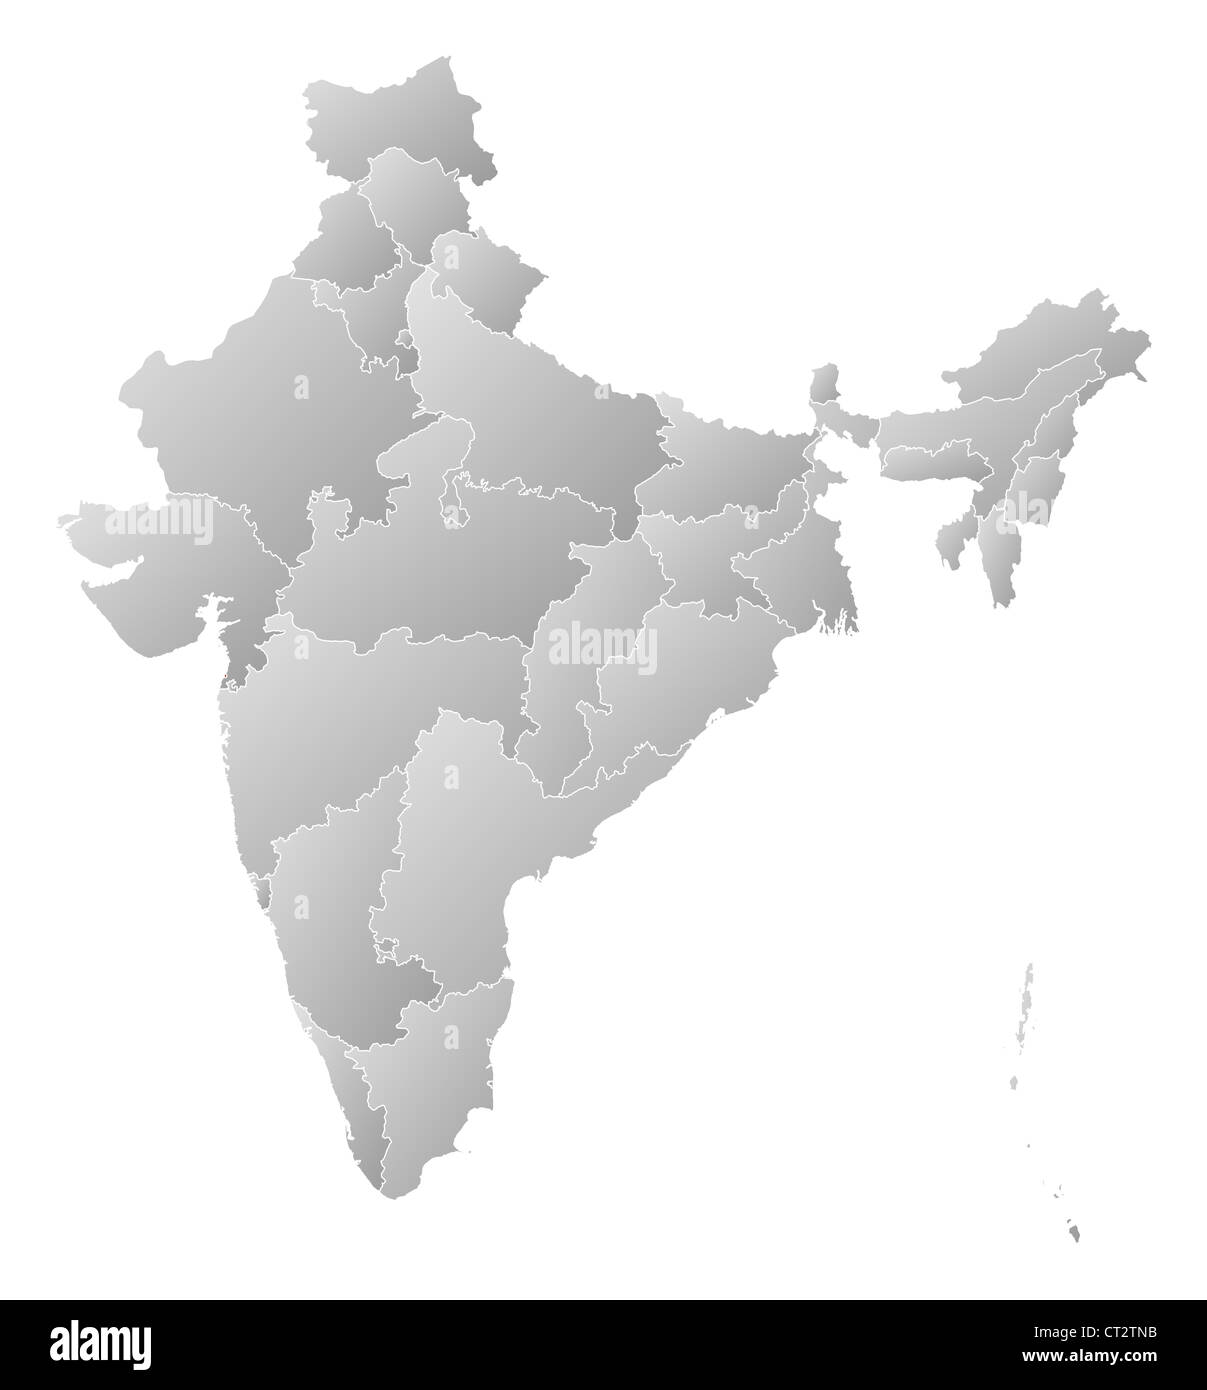 Mappa politico dell'India con i vari Stati in cui Daman e diu sono evidenziati. Foto Stock